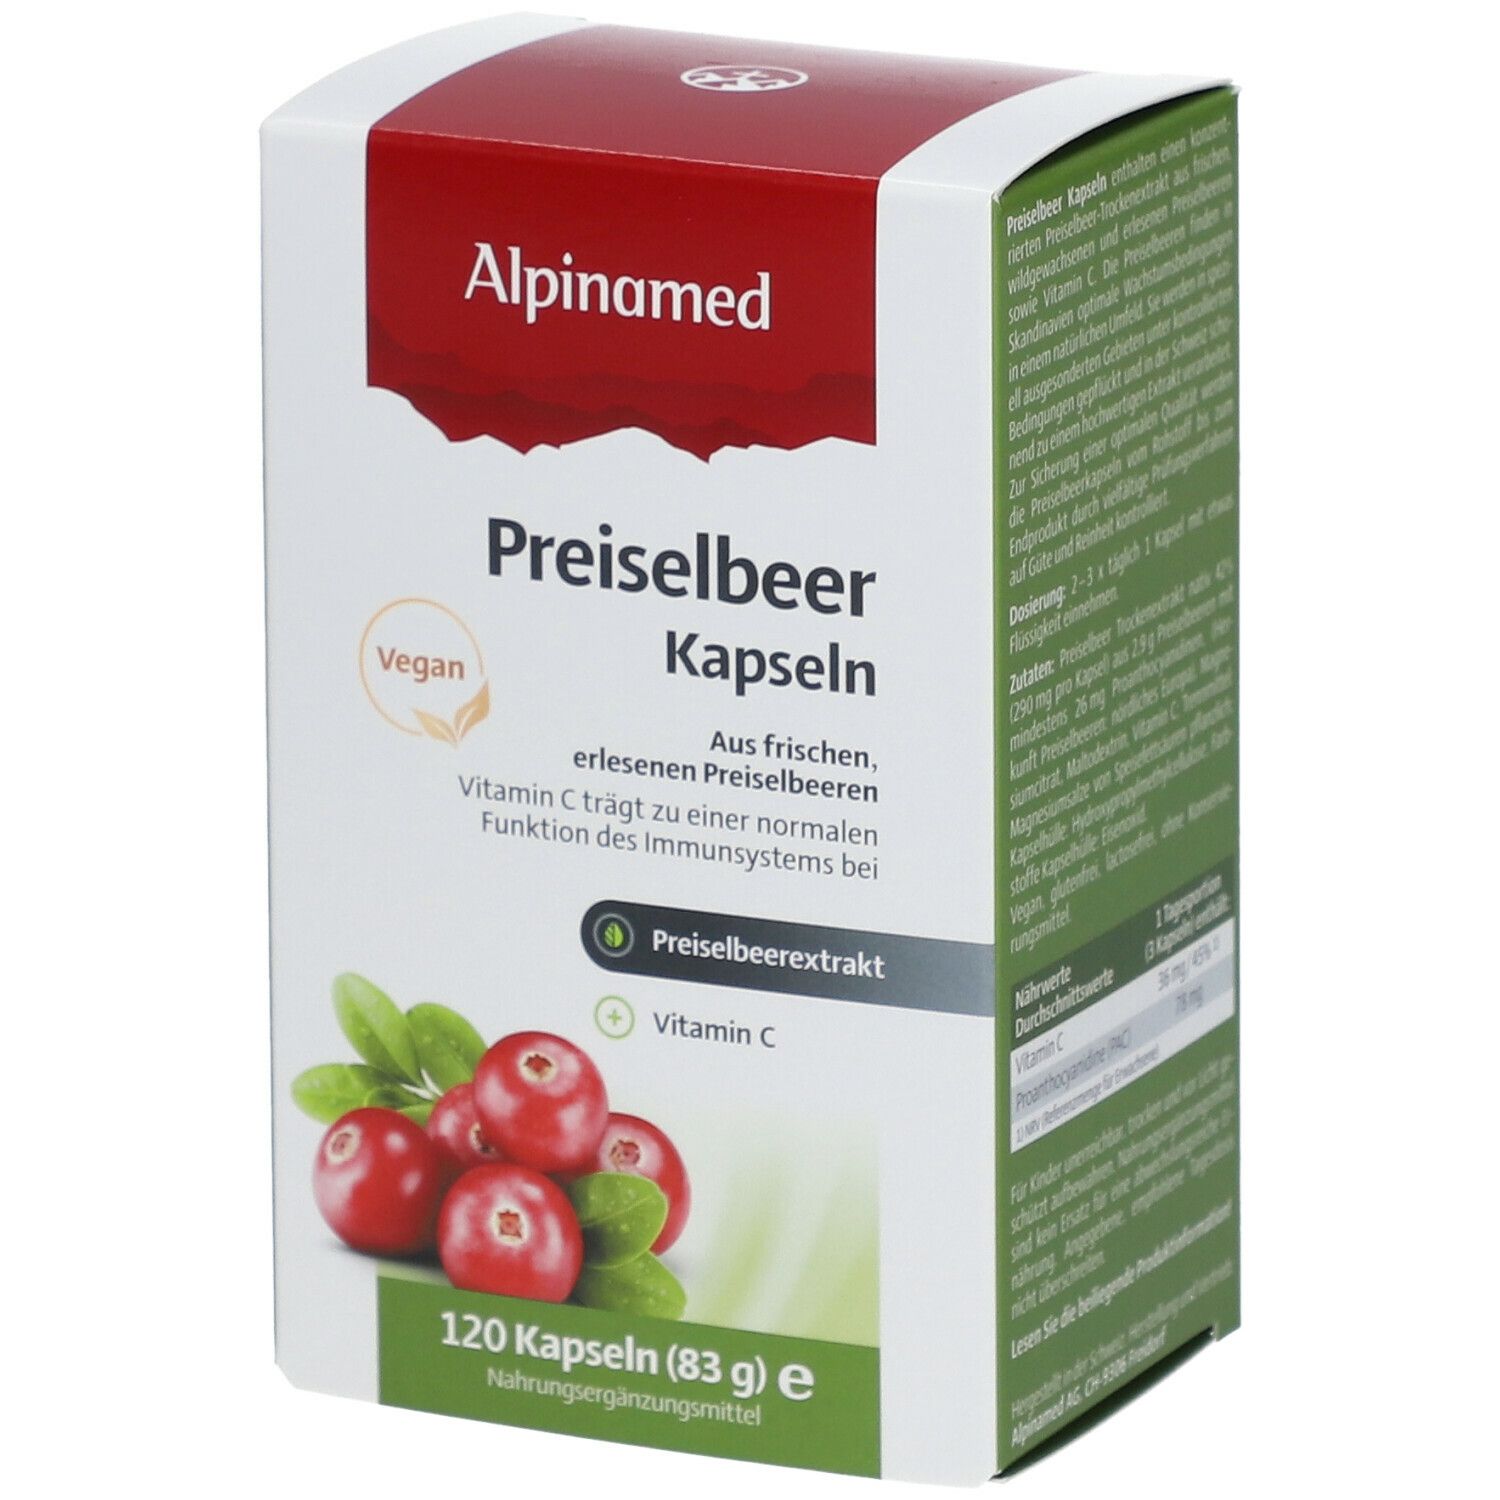 Alpinamed Preiselbeer Kapseln